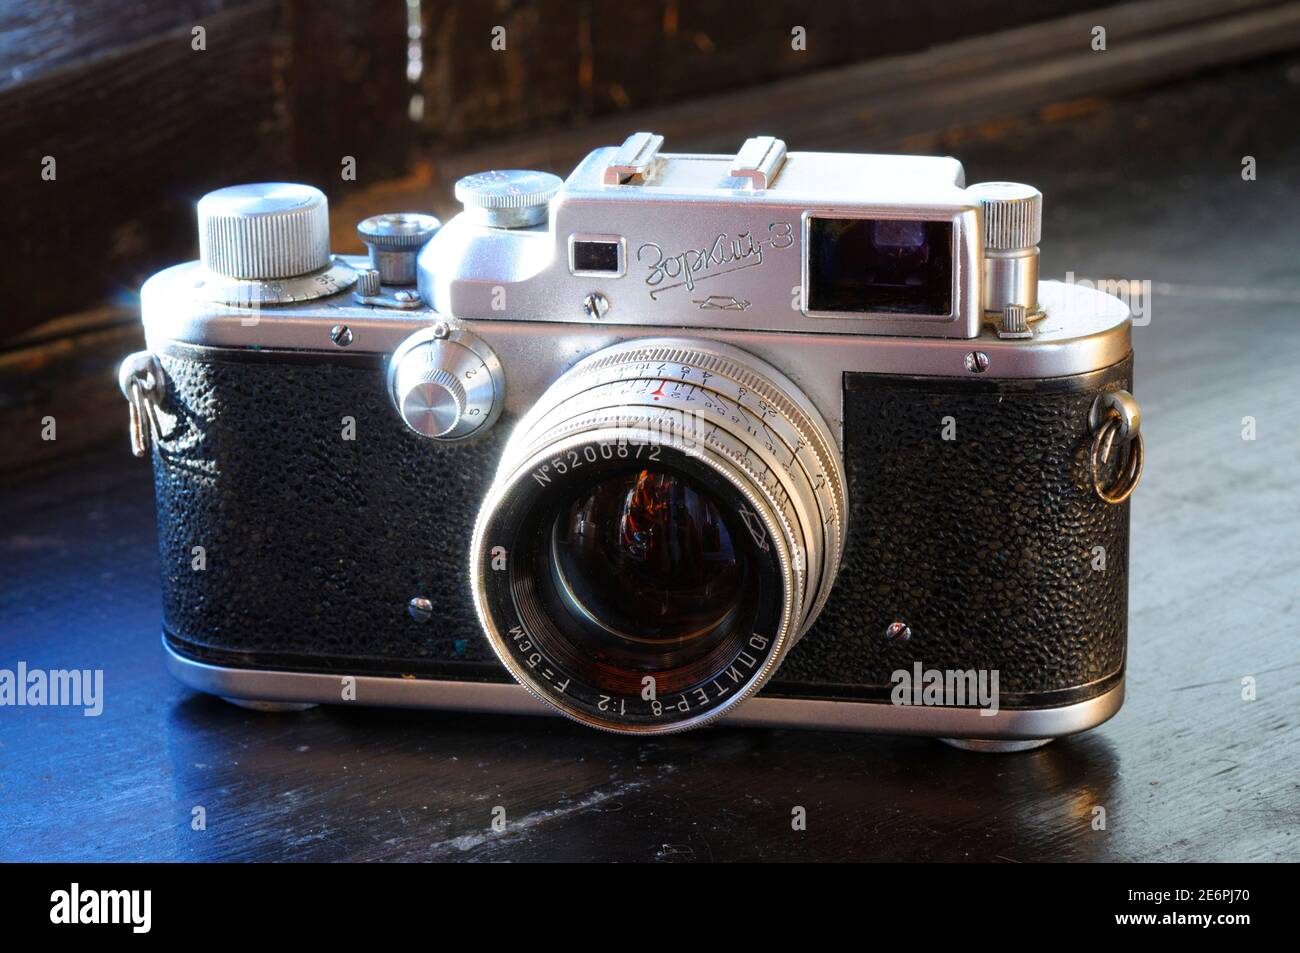 Ancienne caméra film poussiéreuse Zorkiy 3 avec lentille manuelle Jupiter, fabriqué en URSS Banque D'Images